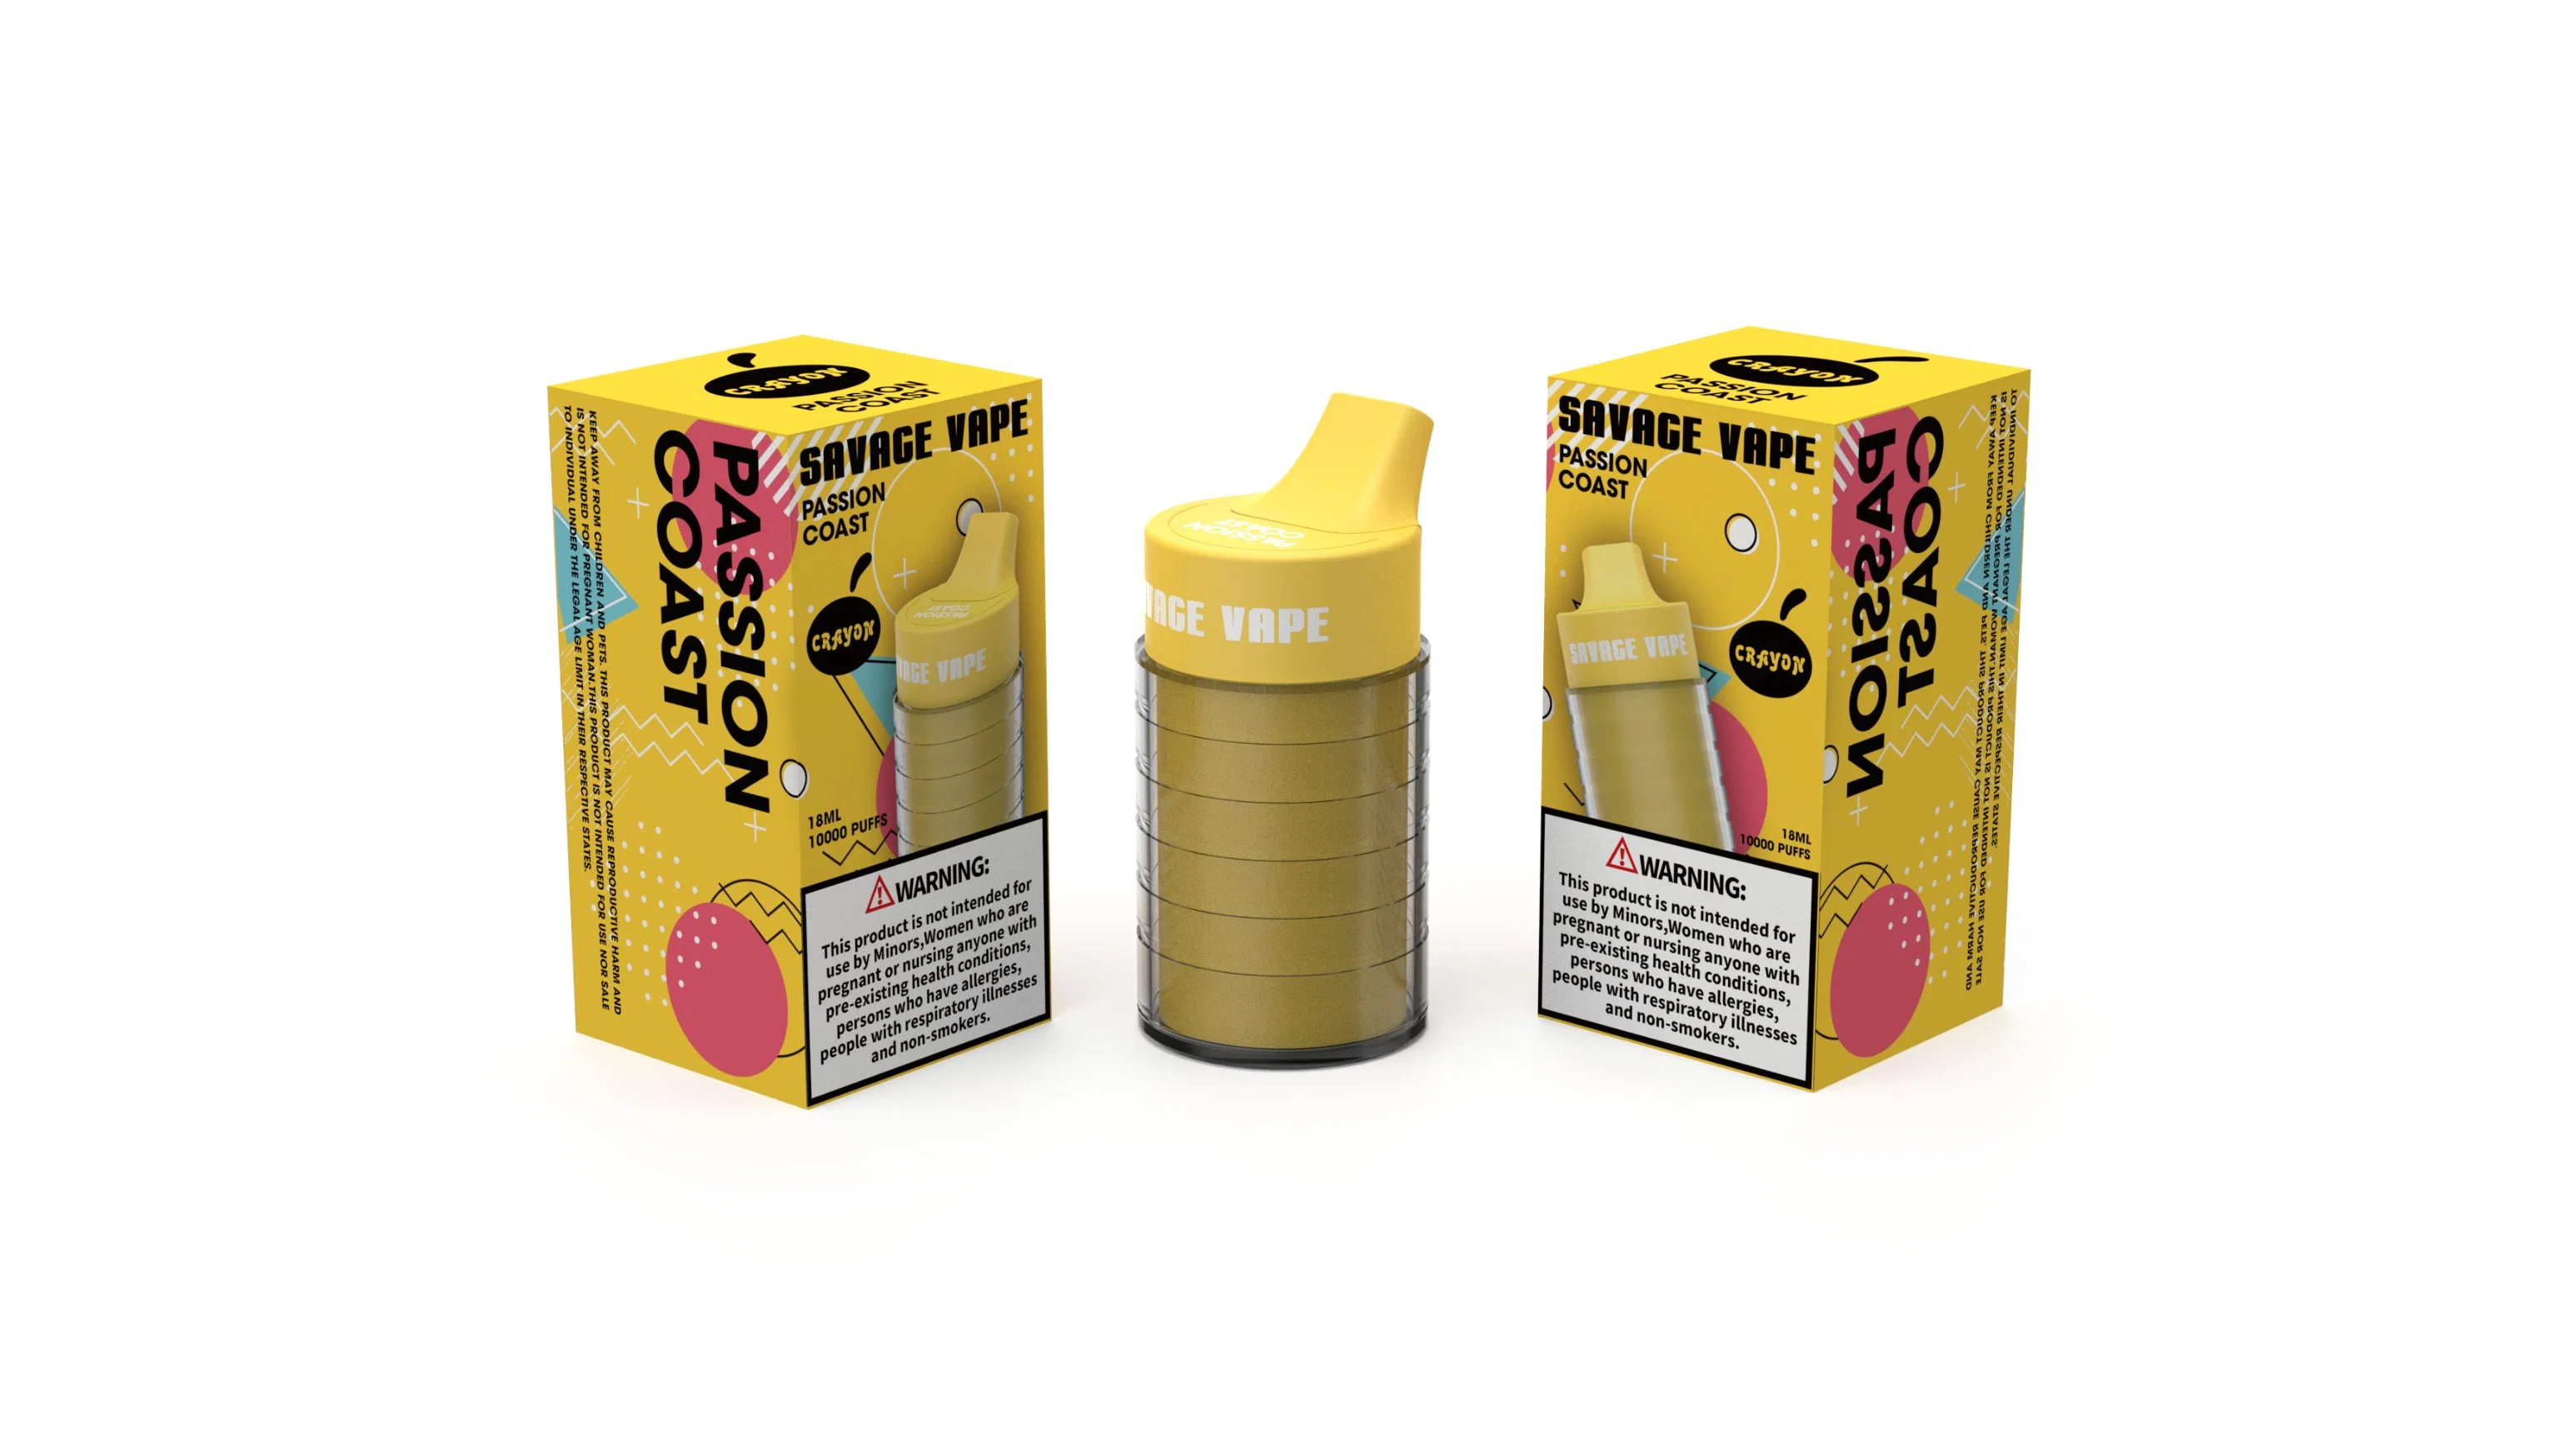 Stock disponible Savage crayon Vapes10K puffs E cigarette Disposable/Chargeable Vape Flacon de 6000 Coca-Cola 8000 5% Max Cup 10K Puff VAPE